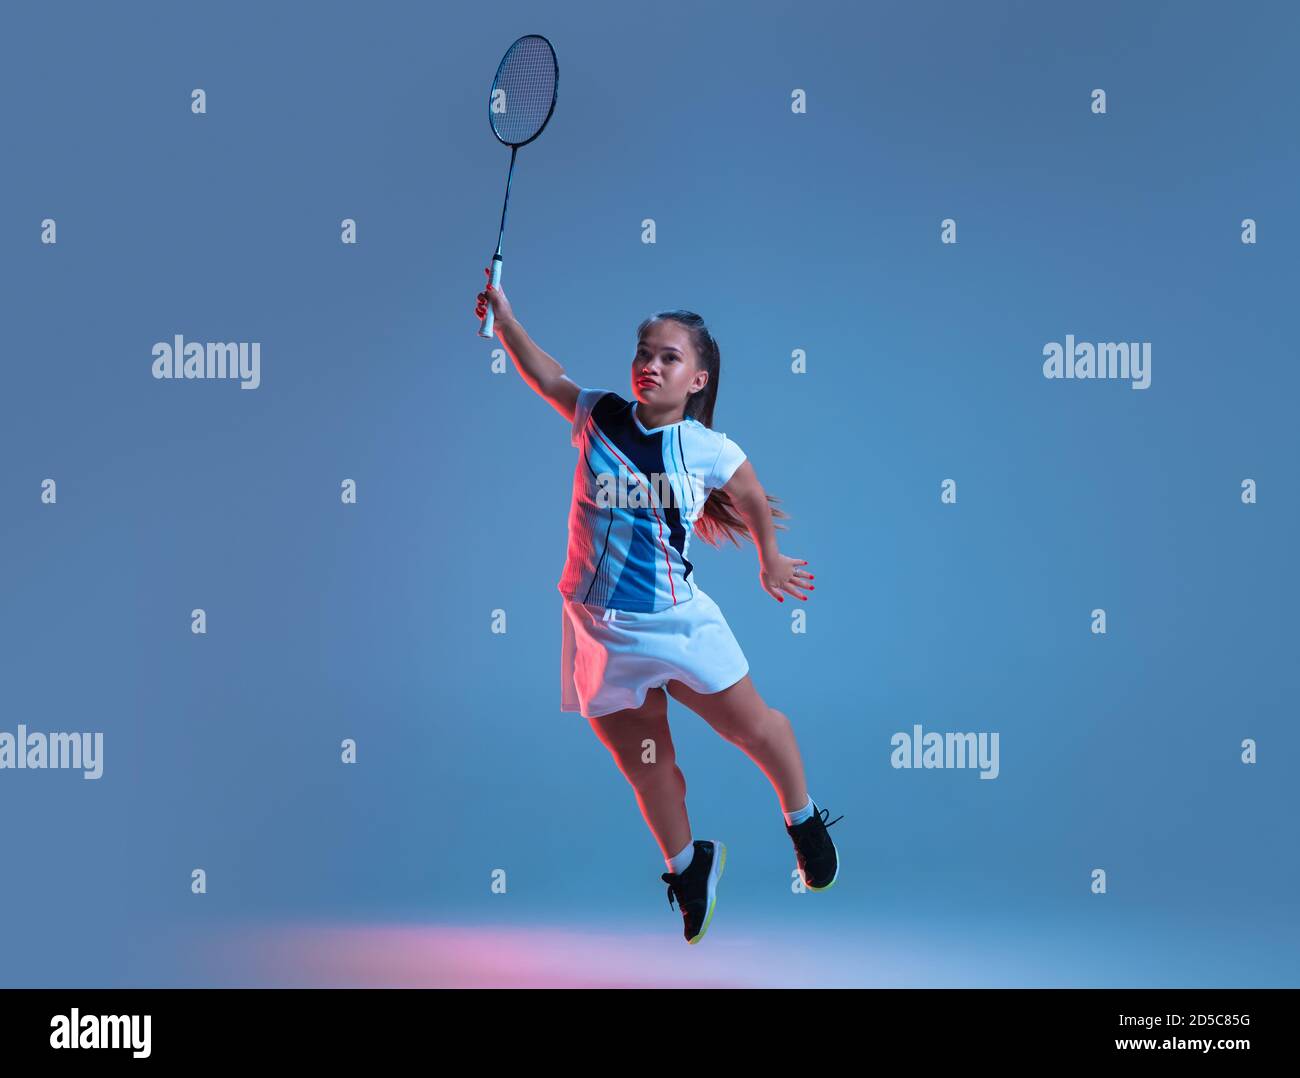 Ganador. Hermosa mujer enana practicando en badminton aislado sobre fondo azul en luz de neón. Estilo de vida de personas inclusivas, diversidad y equilidad. Deporte, actividad y movimiento. CopySpace. Foto de stock